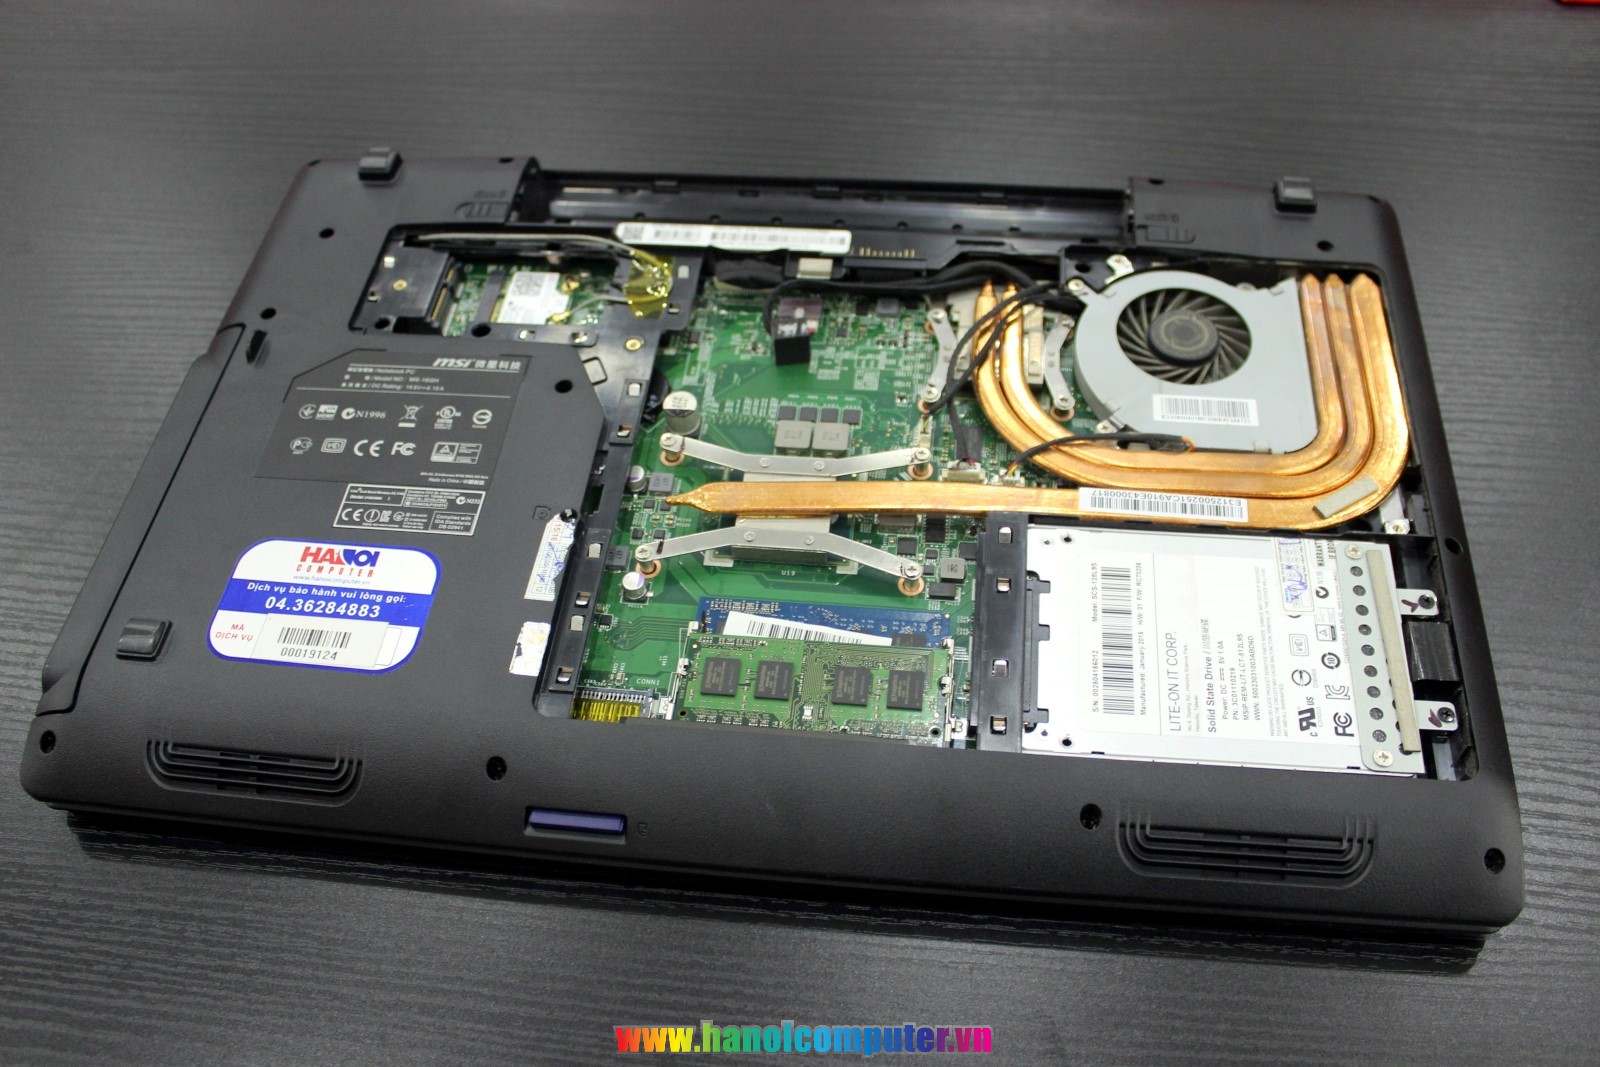 Nâng cấp SSD cho Laptop Gaming – thỏa sức chinh phục game khủng 